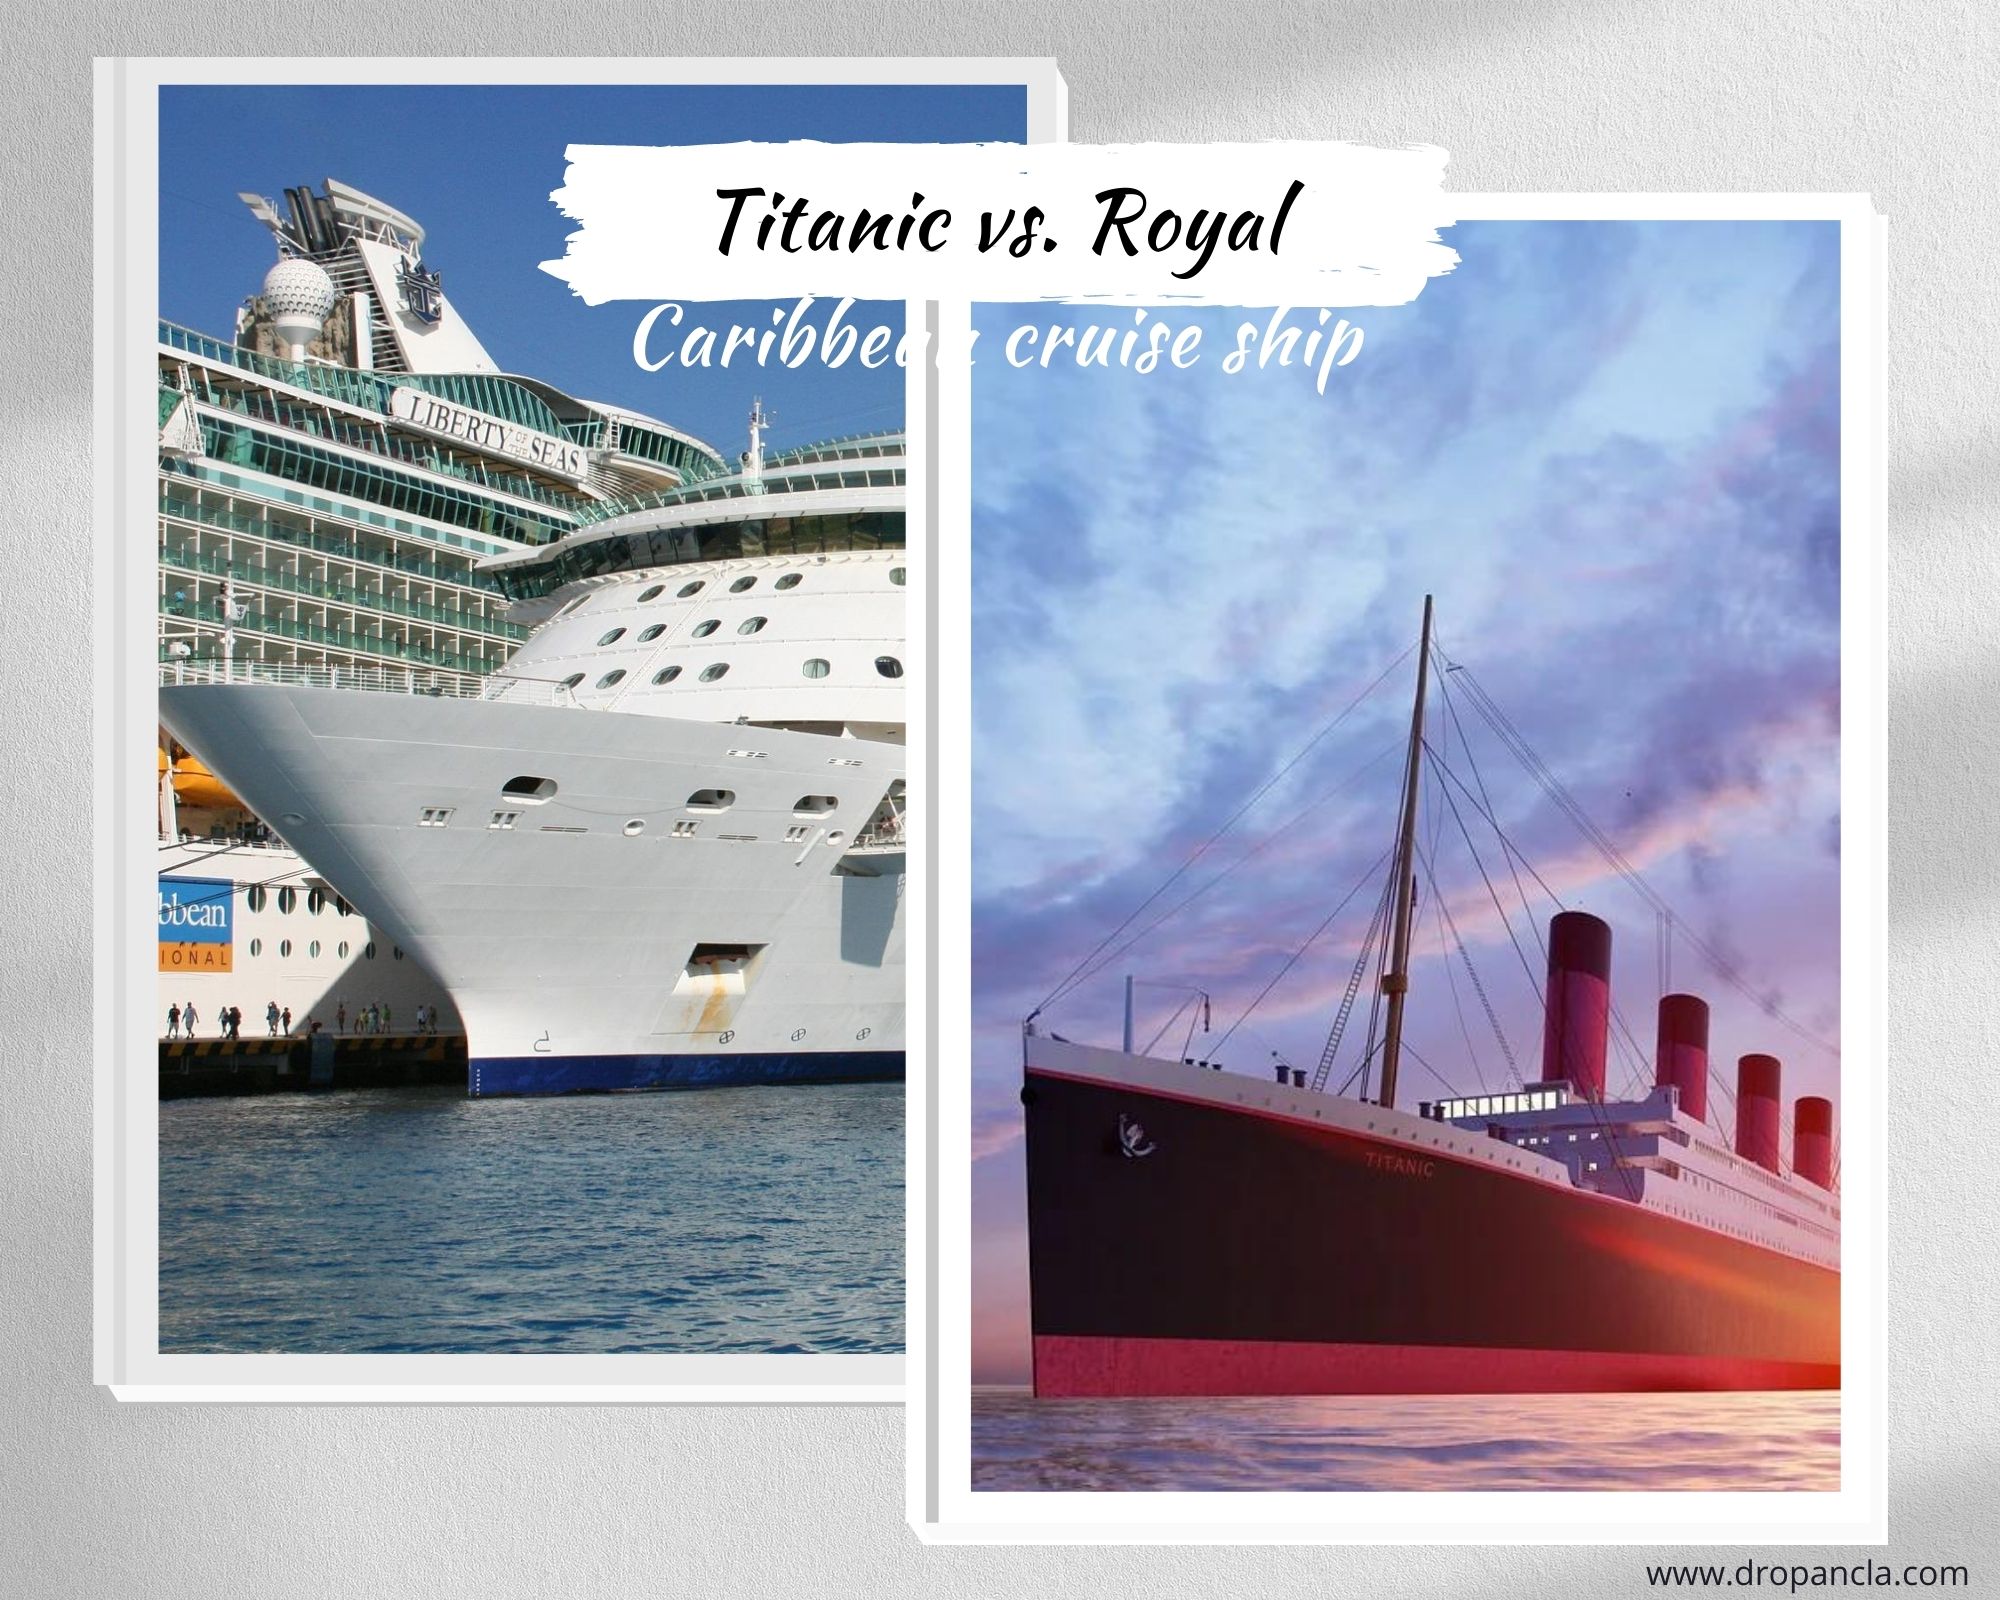 Titanic vs. Royal Caribbean cruise ship